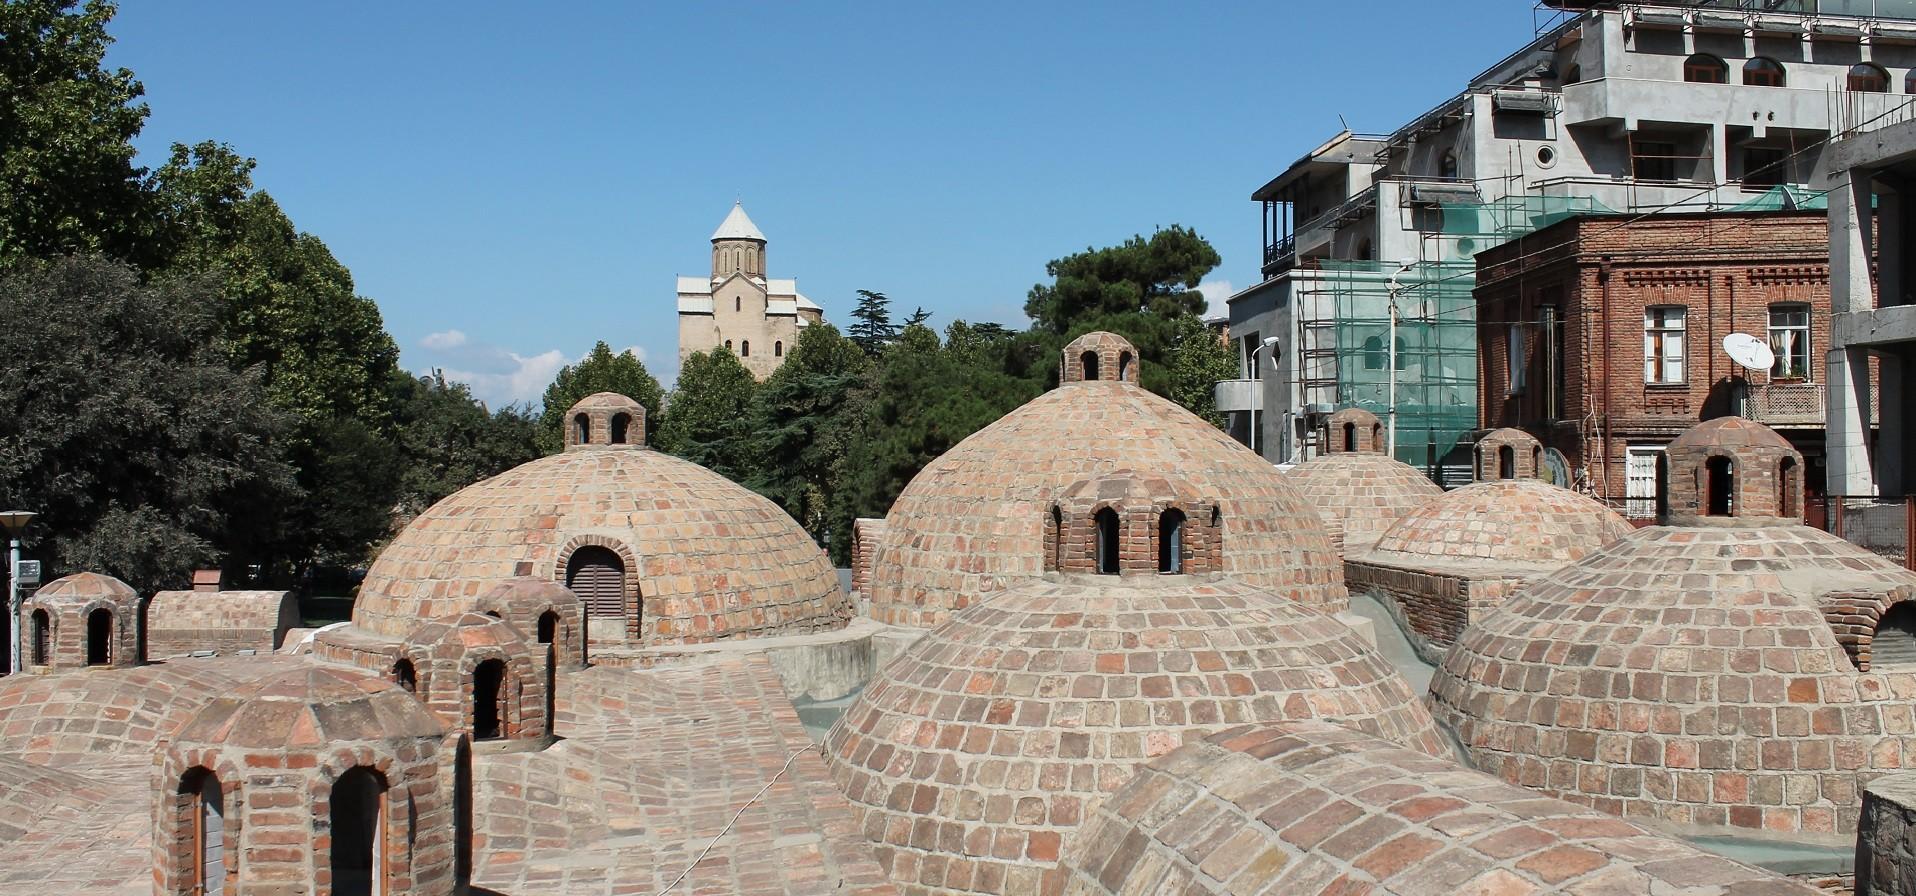 حمام های حرارتی در آبانتوبانی  Tbilisi Sulphur Baths